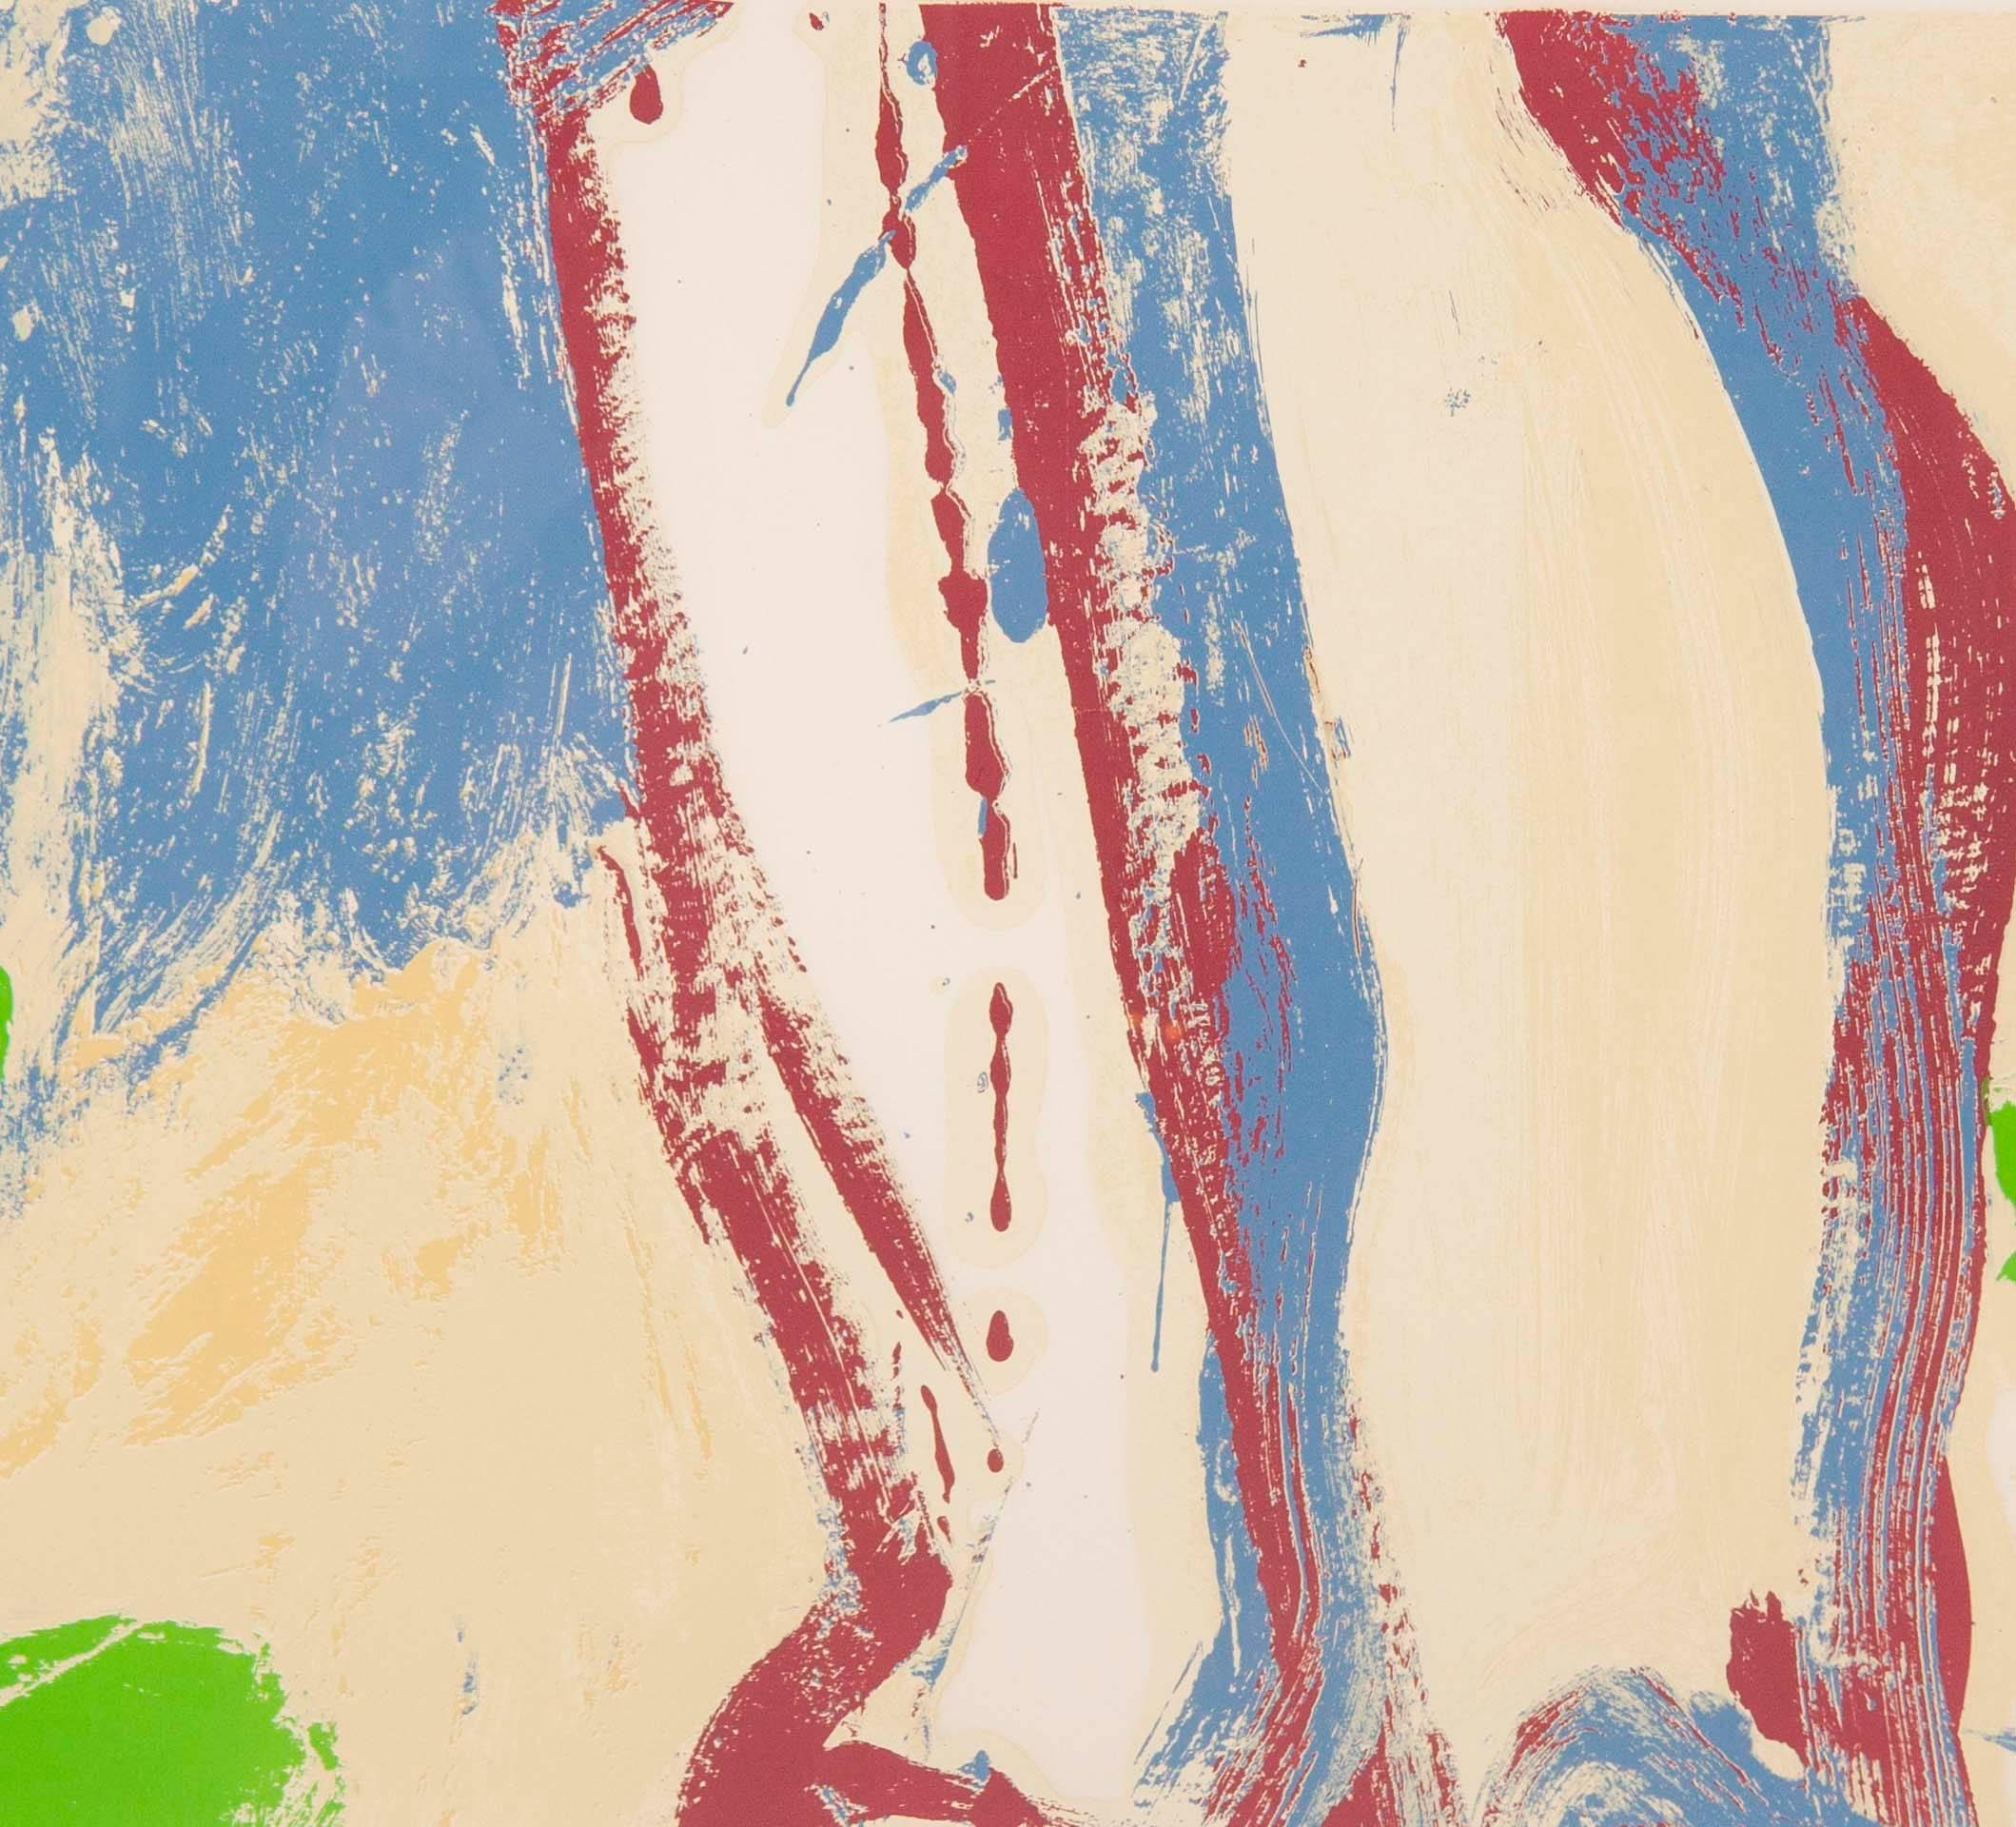 Fin du 20e siècle Sérigraphie sans titre de l'artiste expressionniste abstrait Willem de Kooning